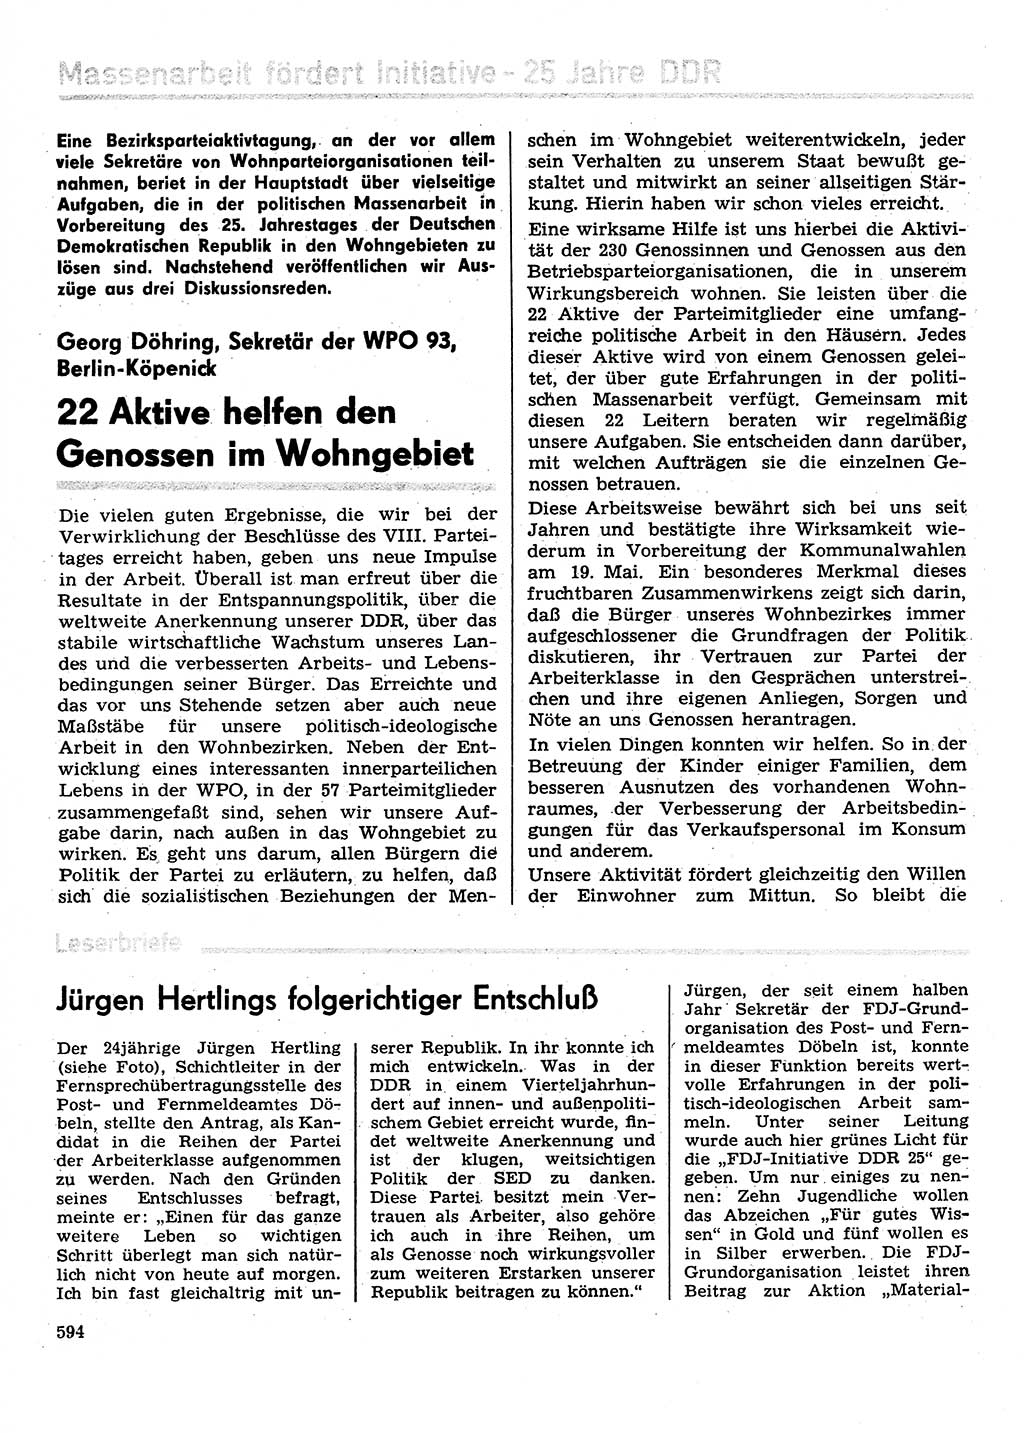 Neuer Weg (NW), Organ des Zentralkomitees (ZK) der SED (Sozialistische Einheitspartei Deutschlands) für Fragen des Parteilebens, 29. Jahrgang [Deutsche Demokratische Republik (DDR)] 1974, Seite 594 (NW ZK SED DDR 1974, S. 594)